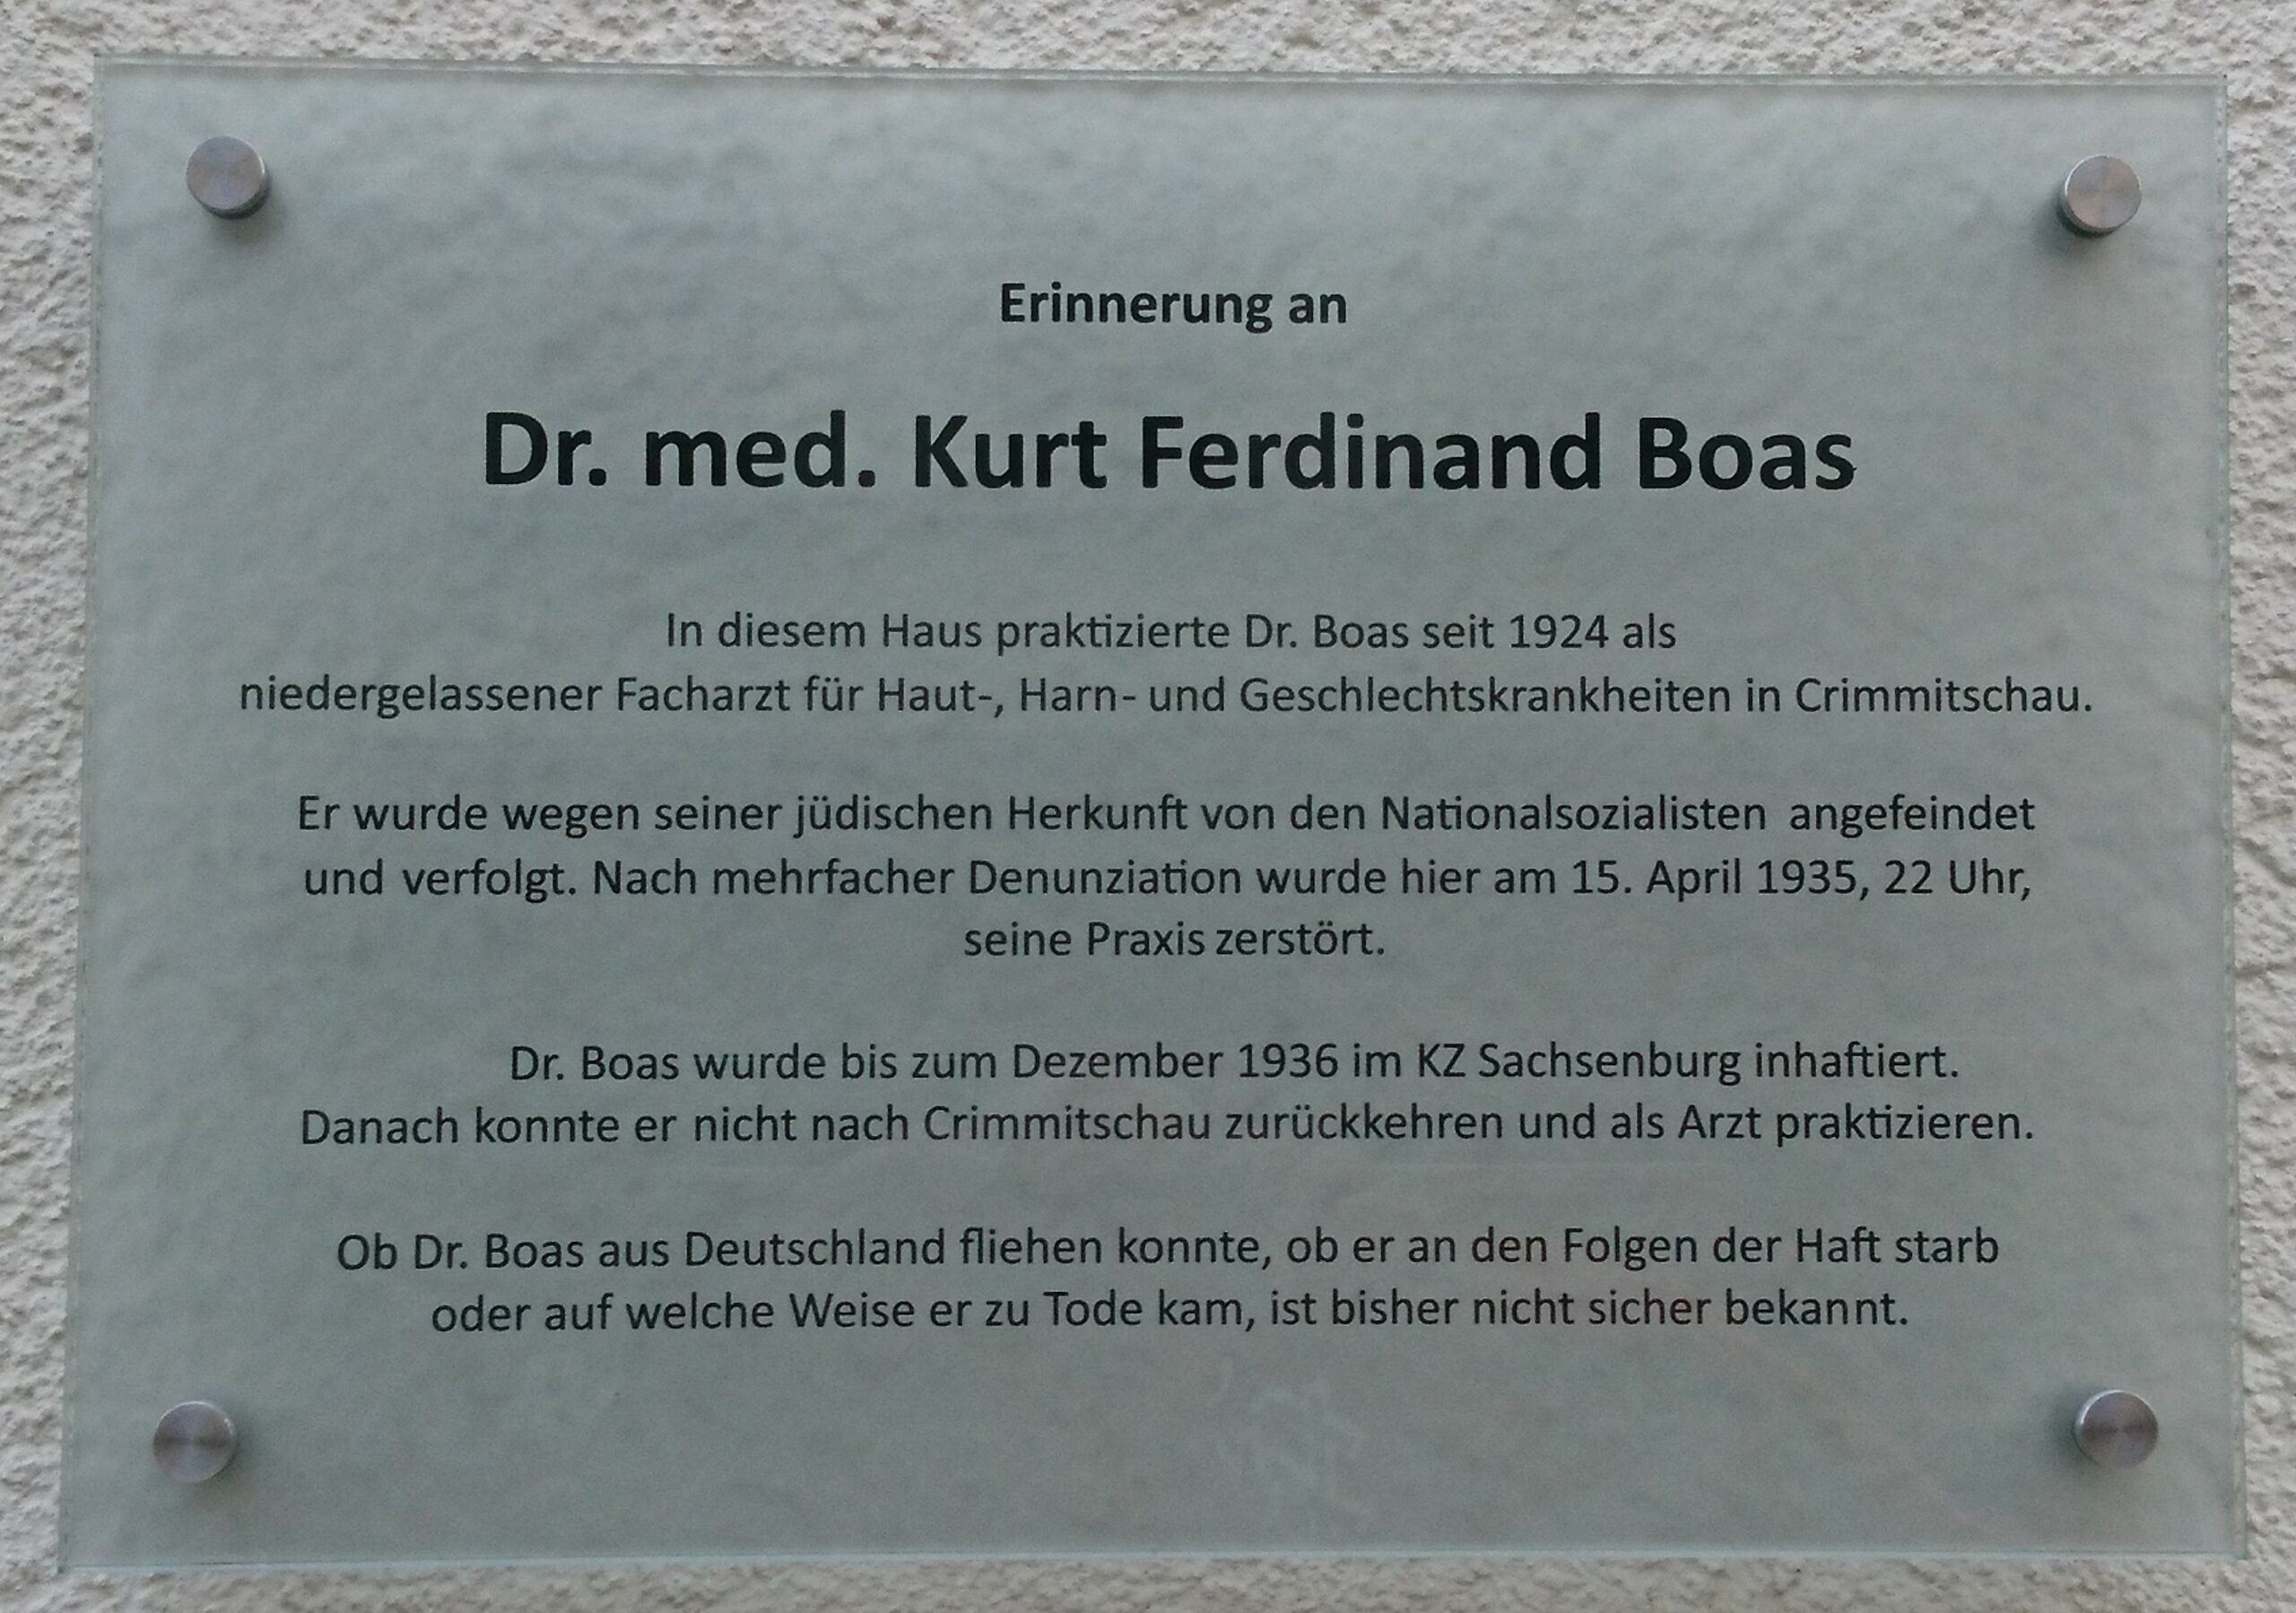 Gedenktafel für Kurt Ferdinand Boas am Haus seiner ehemaligen Praxis in Crimmitschau